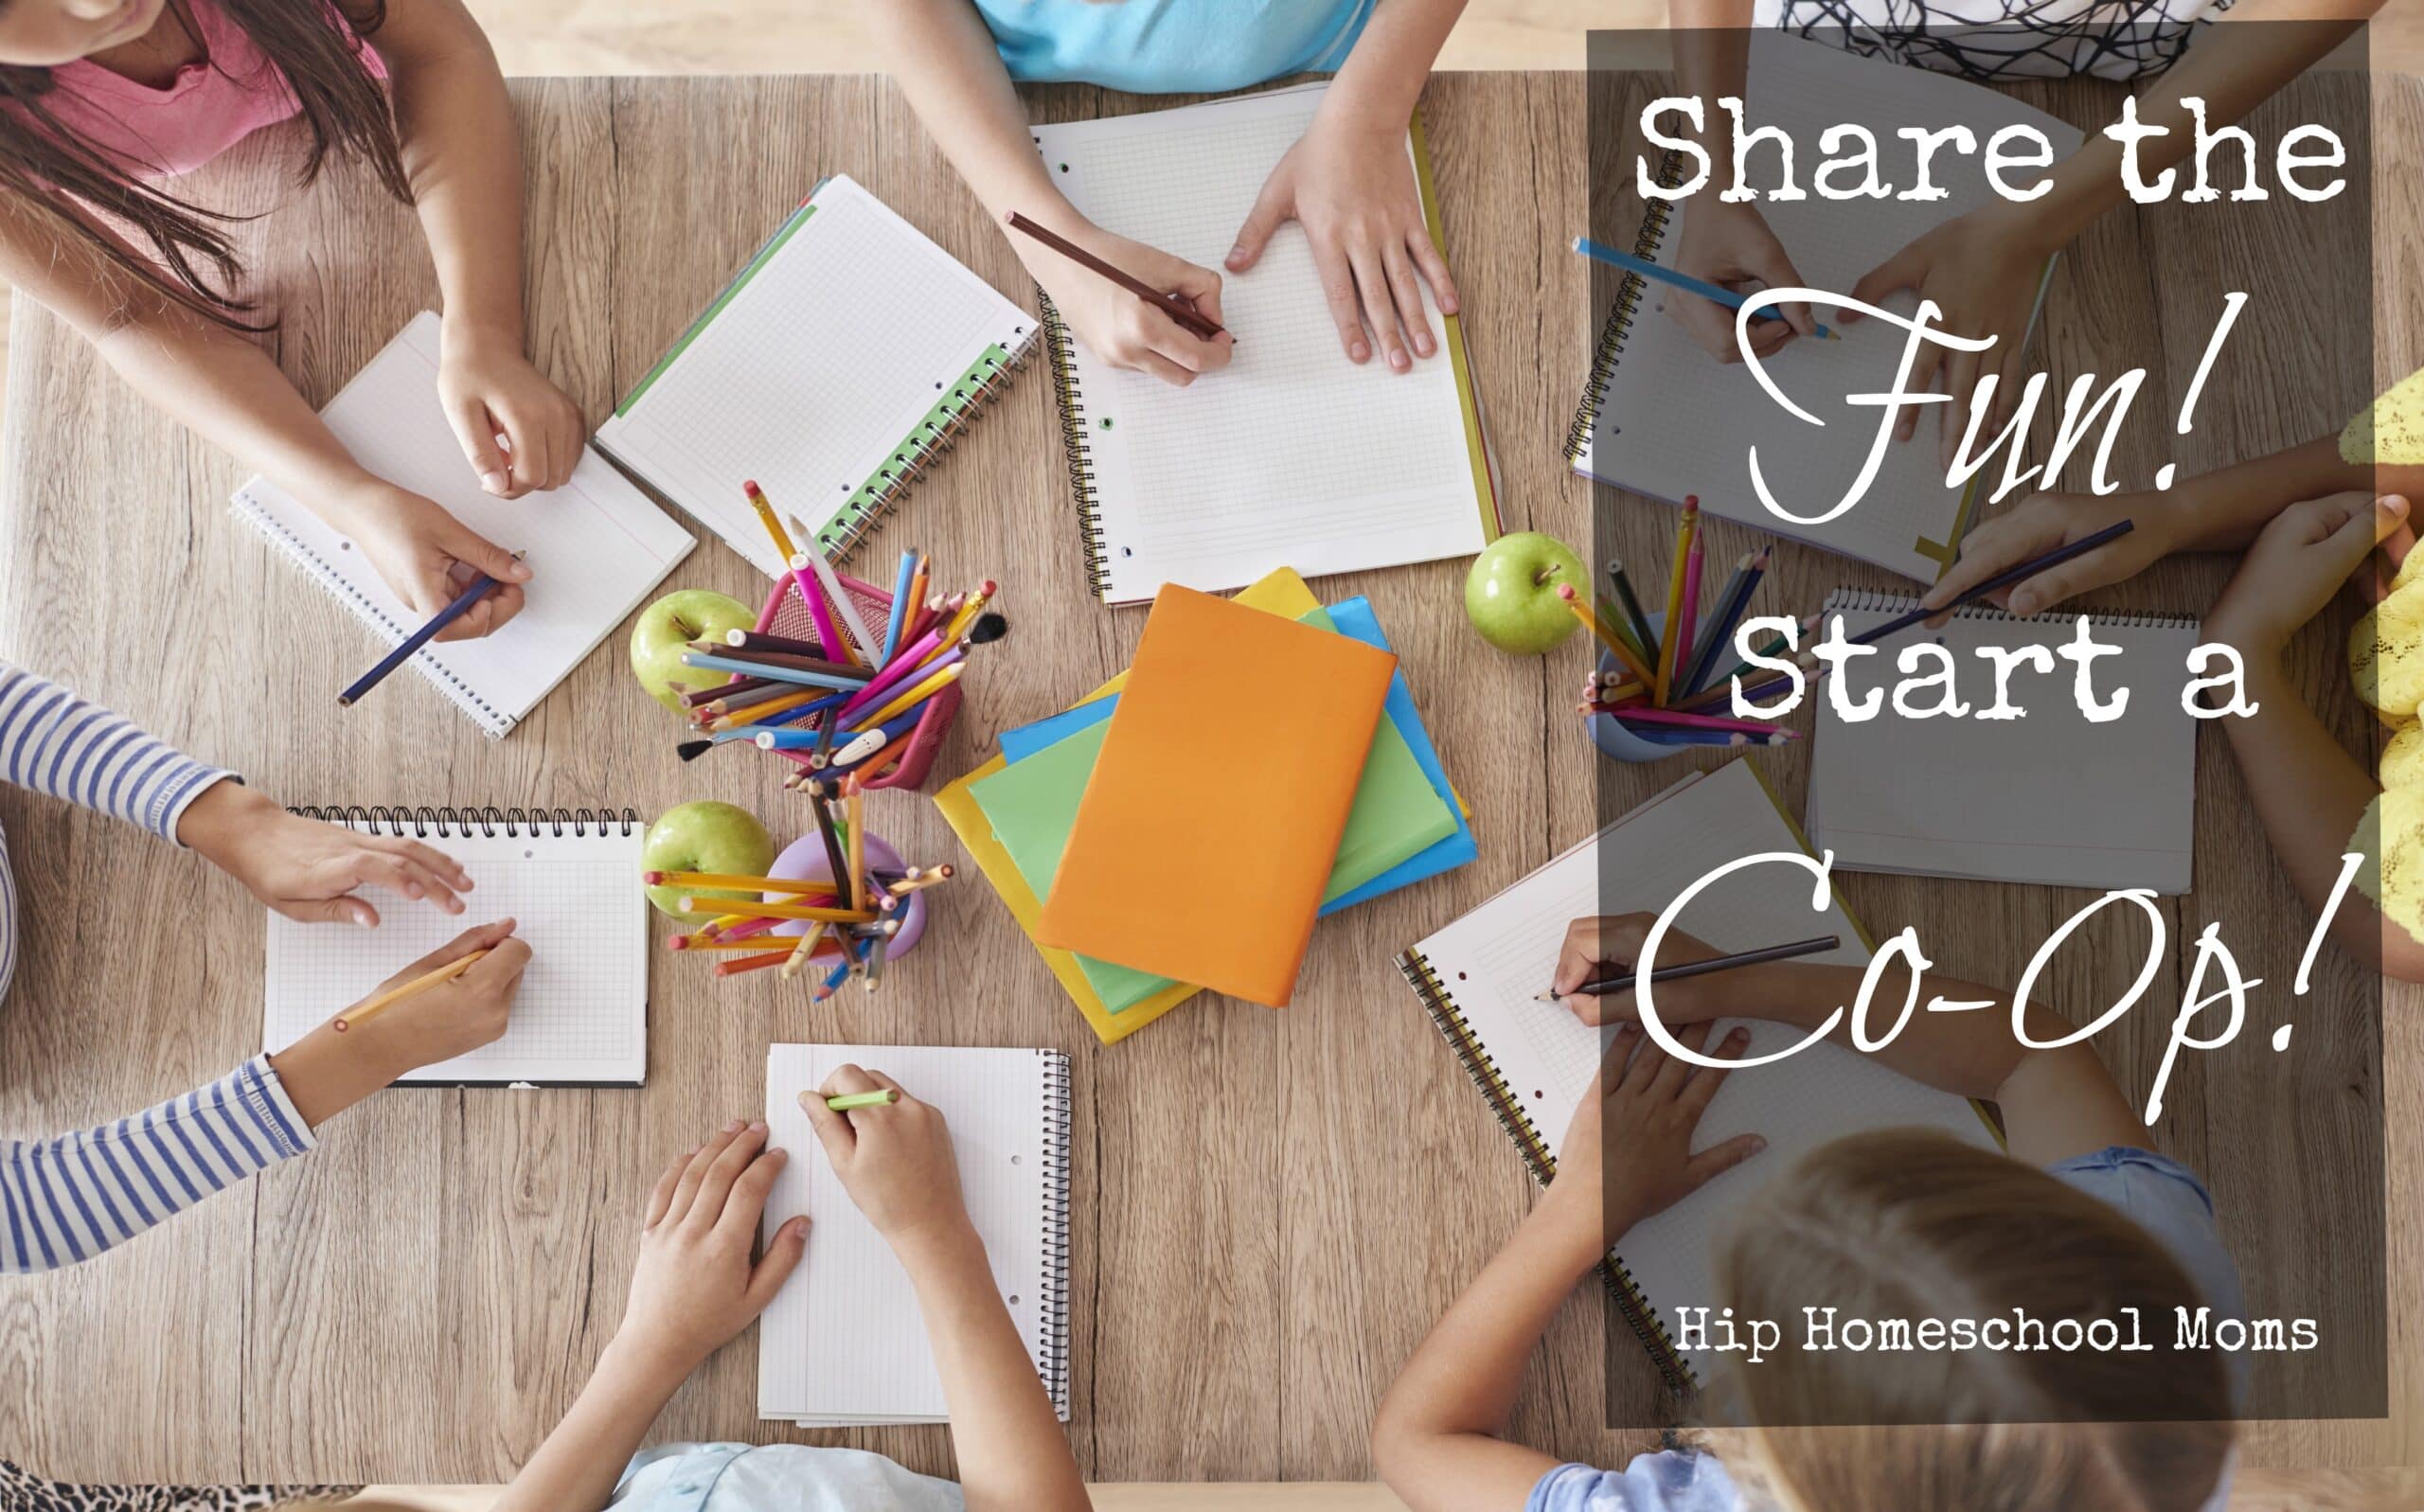 Share the Fun – Start a Co-op